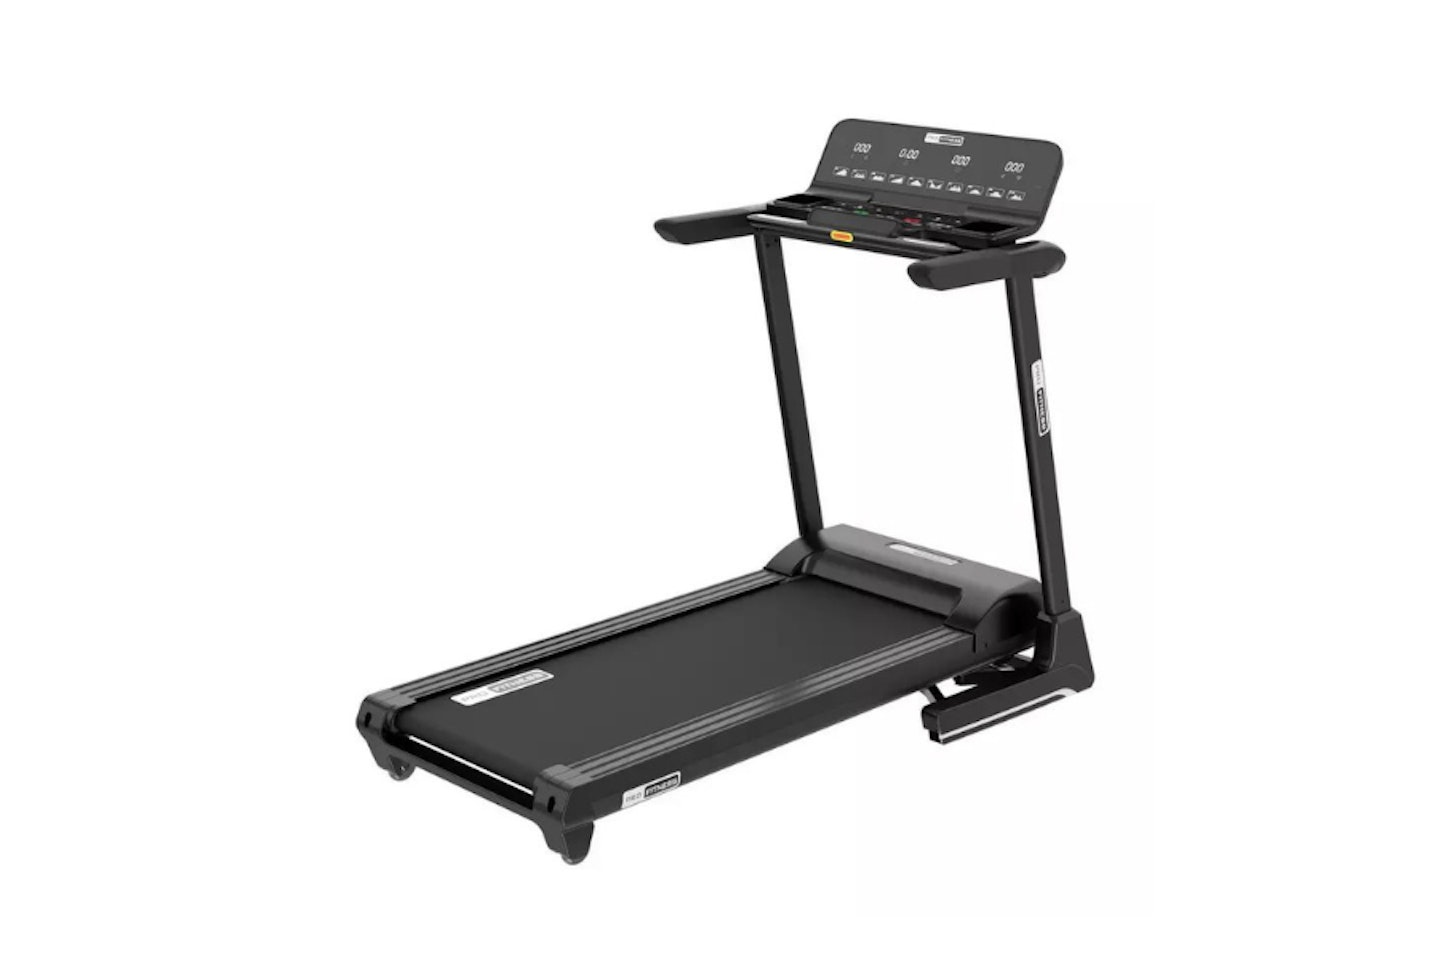 Pro Fitness T1000 Folding Treadmill